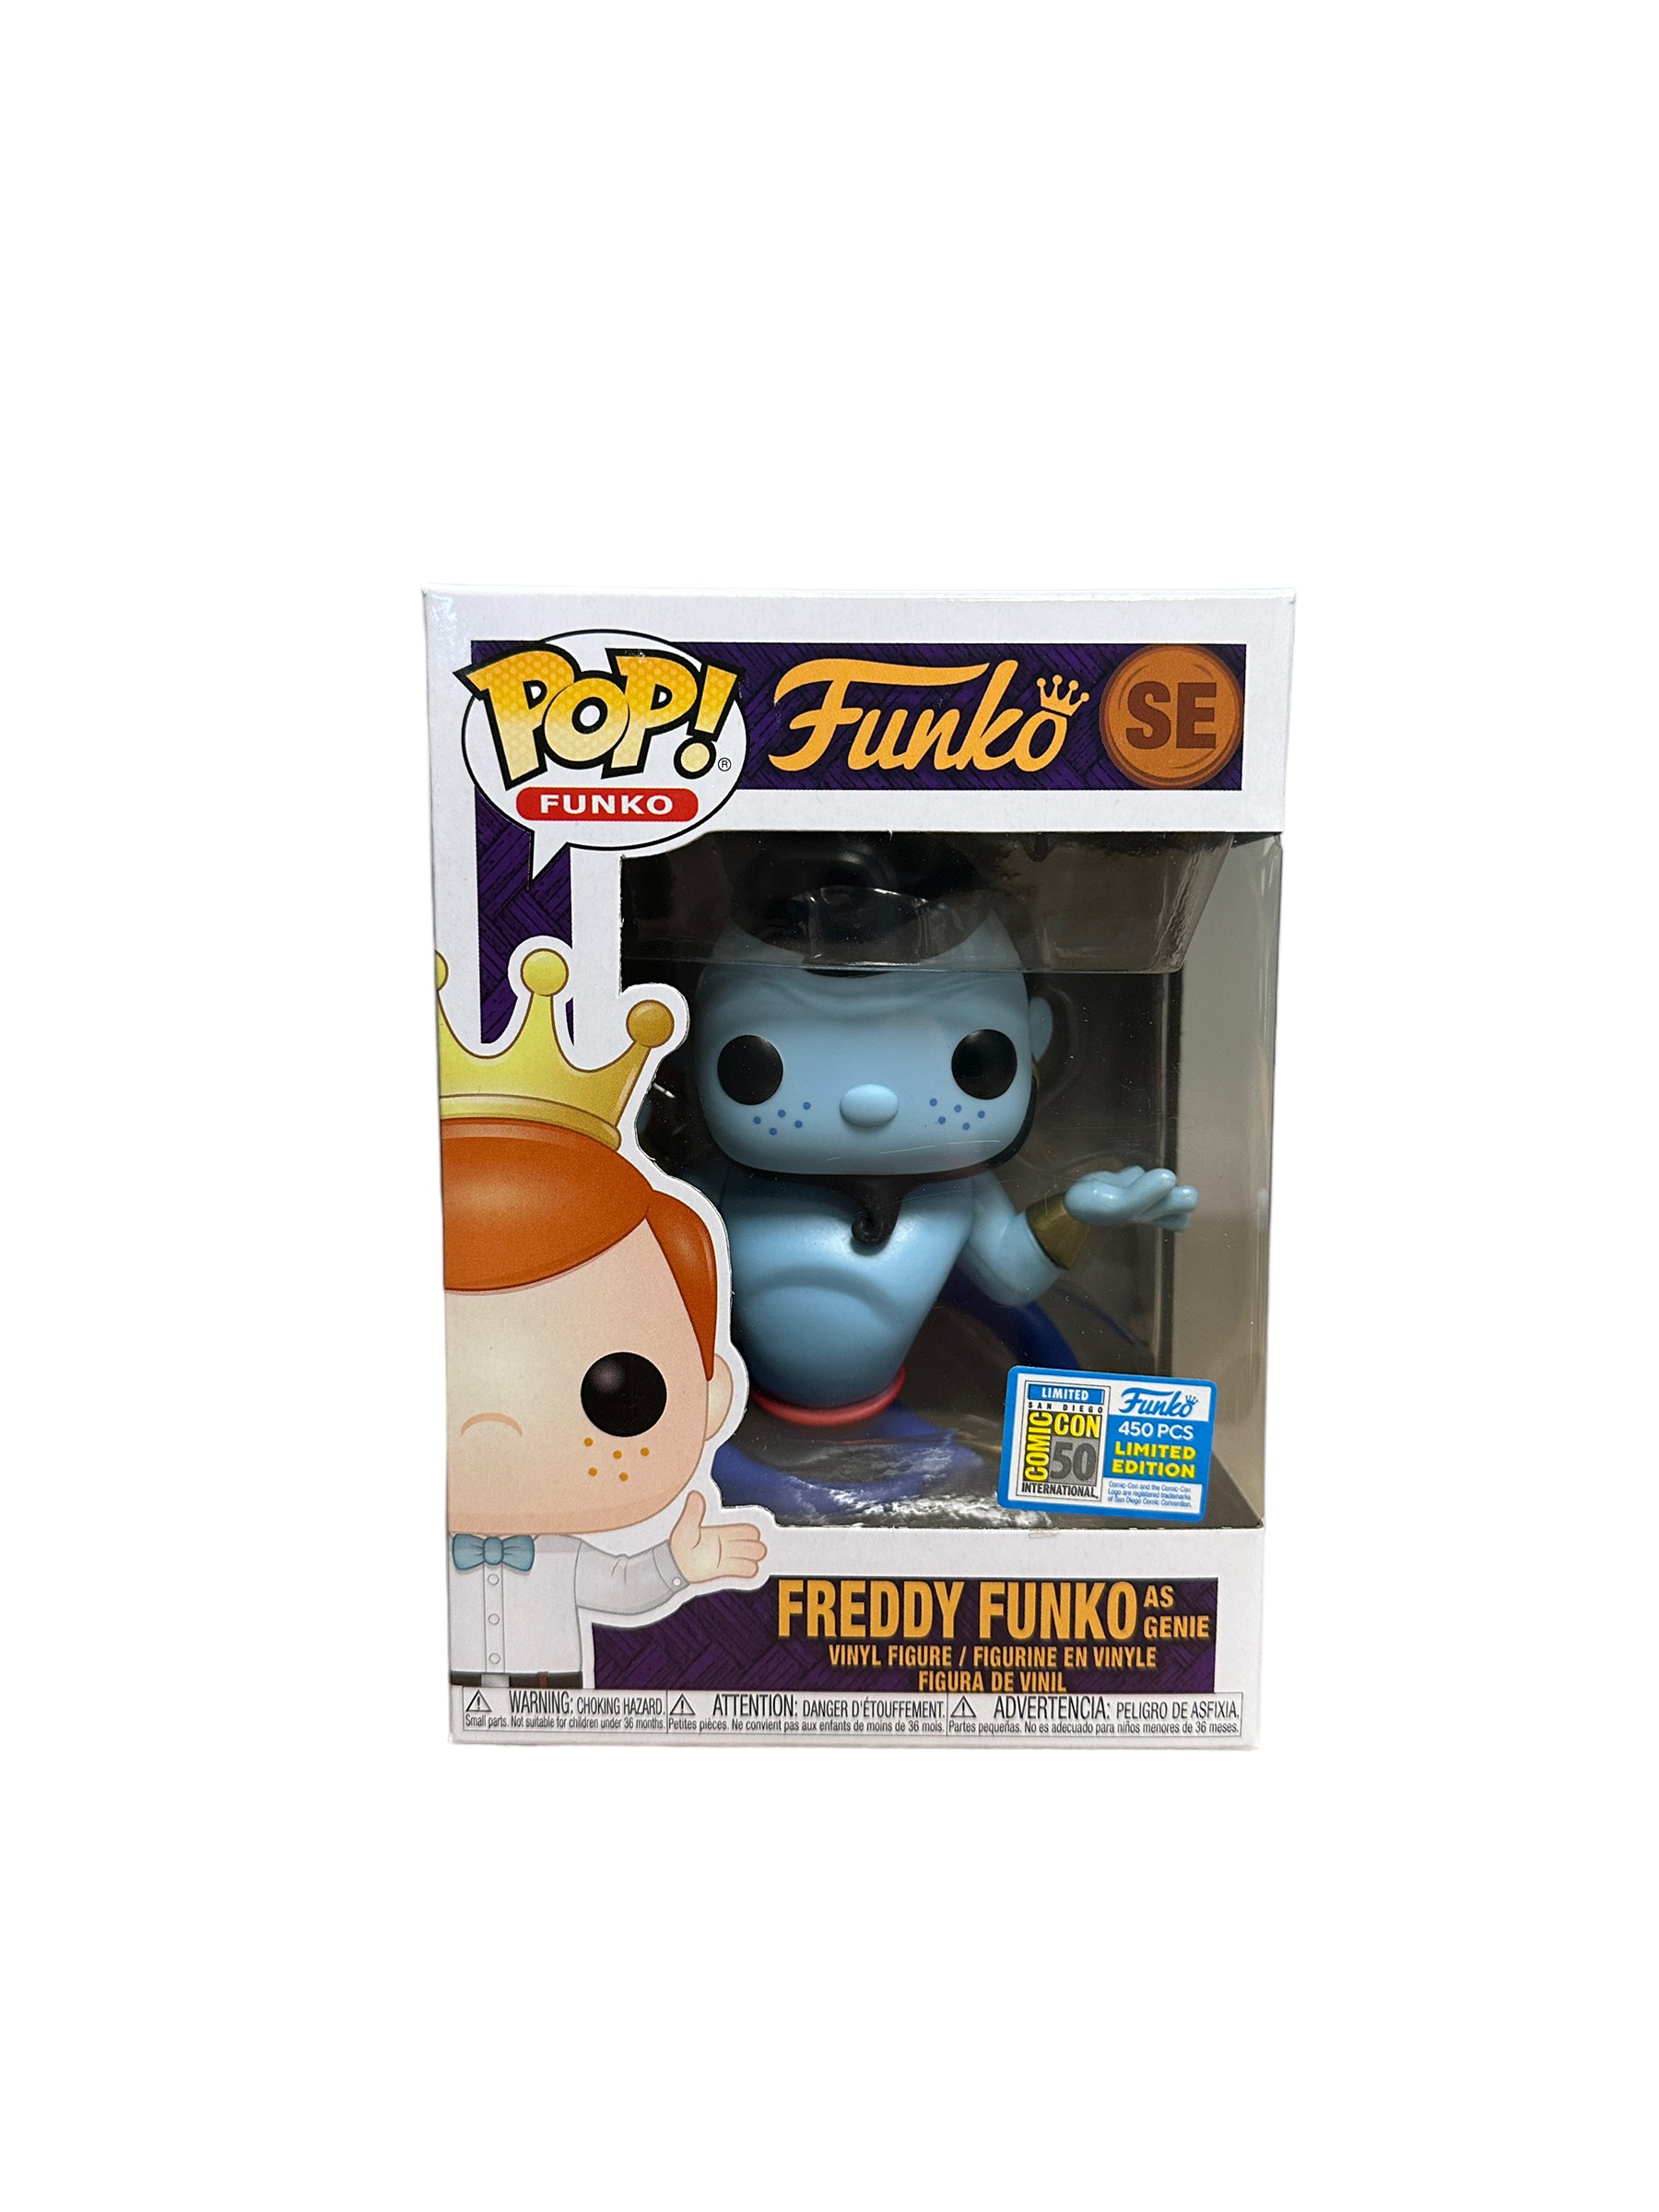 Freddy Funko as Genie Funko Pop! - SDCC 2019 Exclusive LE450 Pcs - Condition 9/10